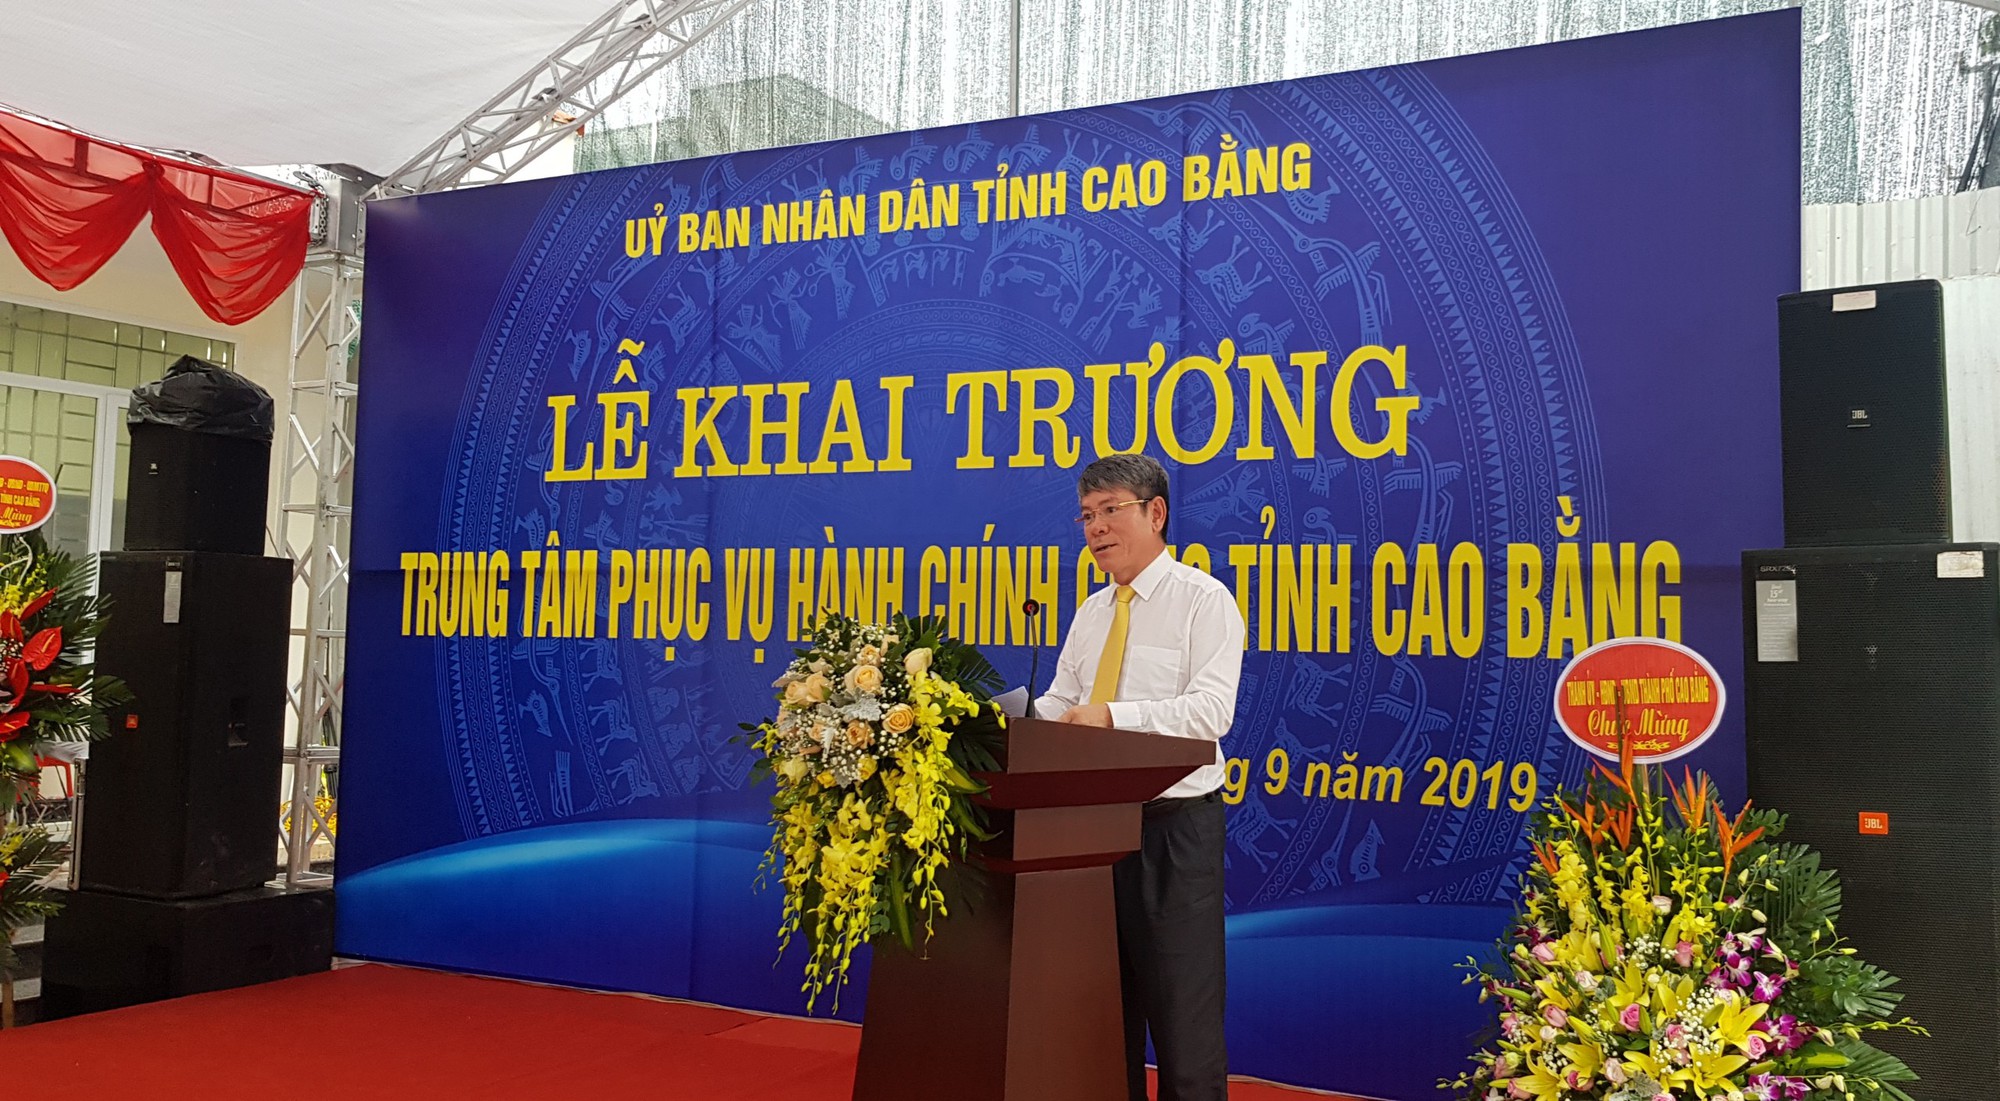 Phó Tổng giám đốc Tổng công ty Bưu điện Việt Nam Đinh Như Hạnh phát biểu tại Lễ khai trương Trung tâm HCC tỉnh cao Bằng